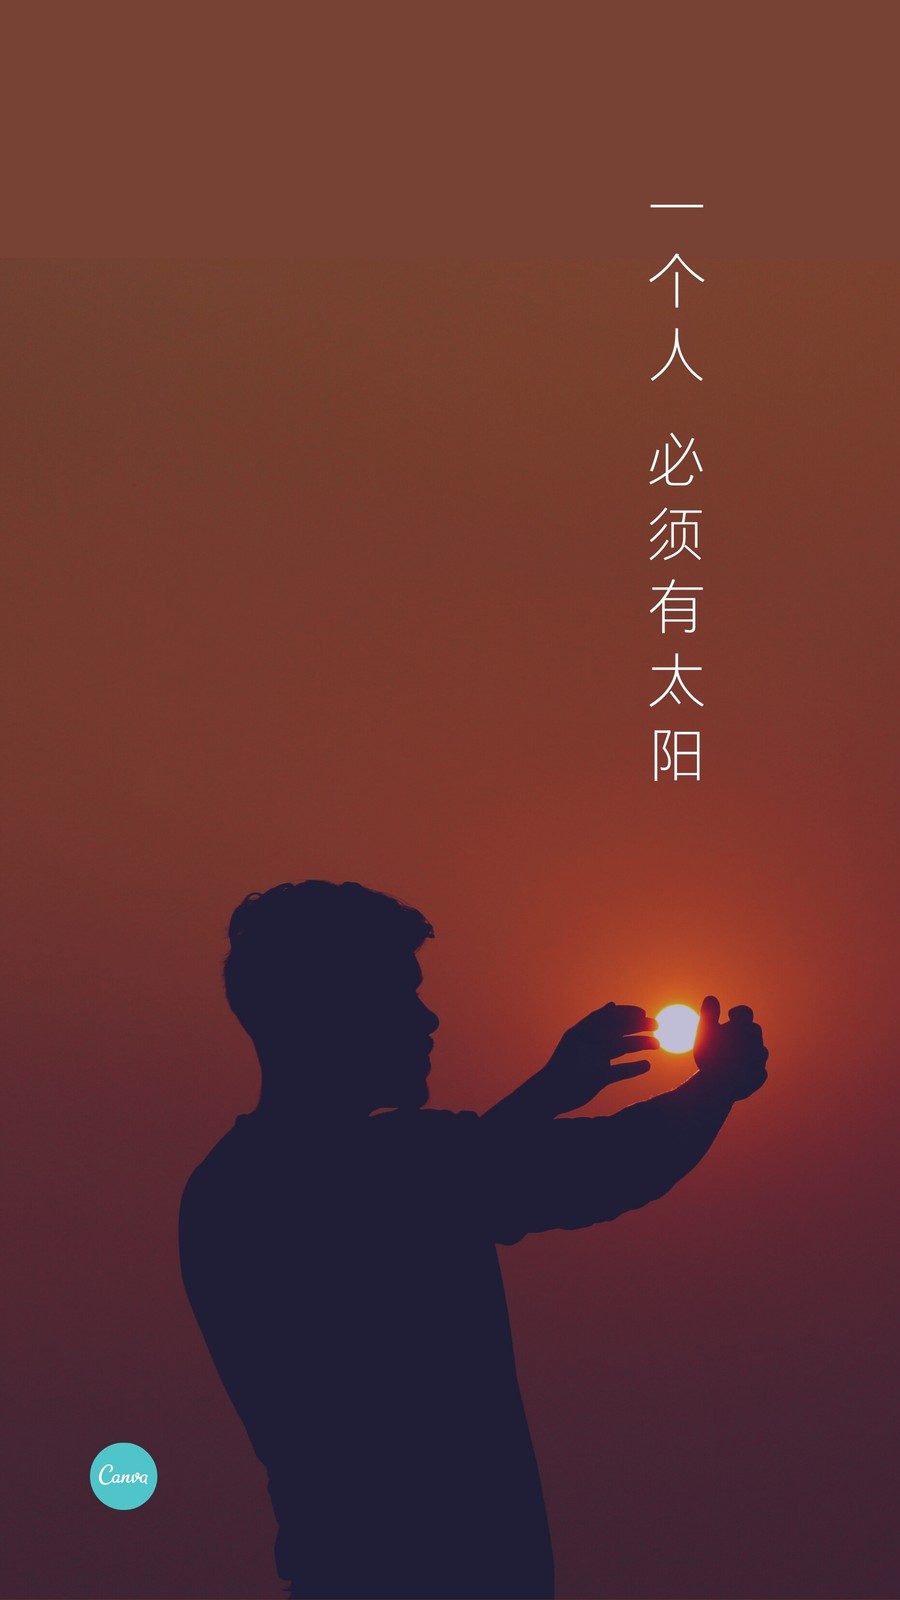 黑橙色橘色太阳文艺小清新壁纸中式中文手机壁纸